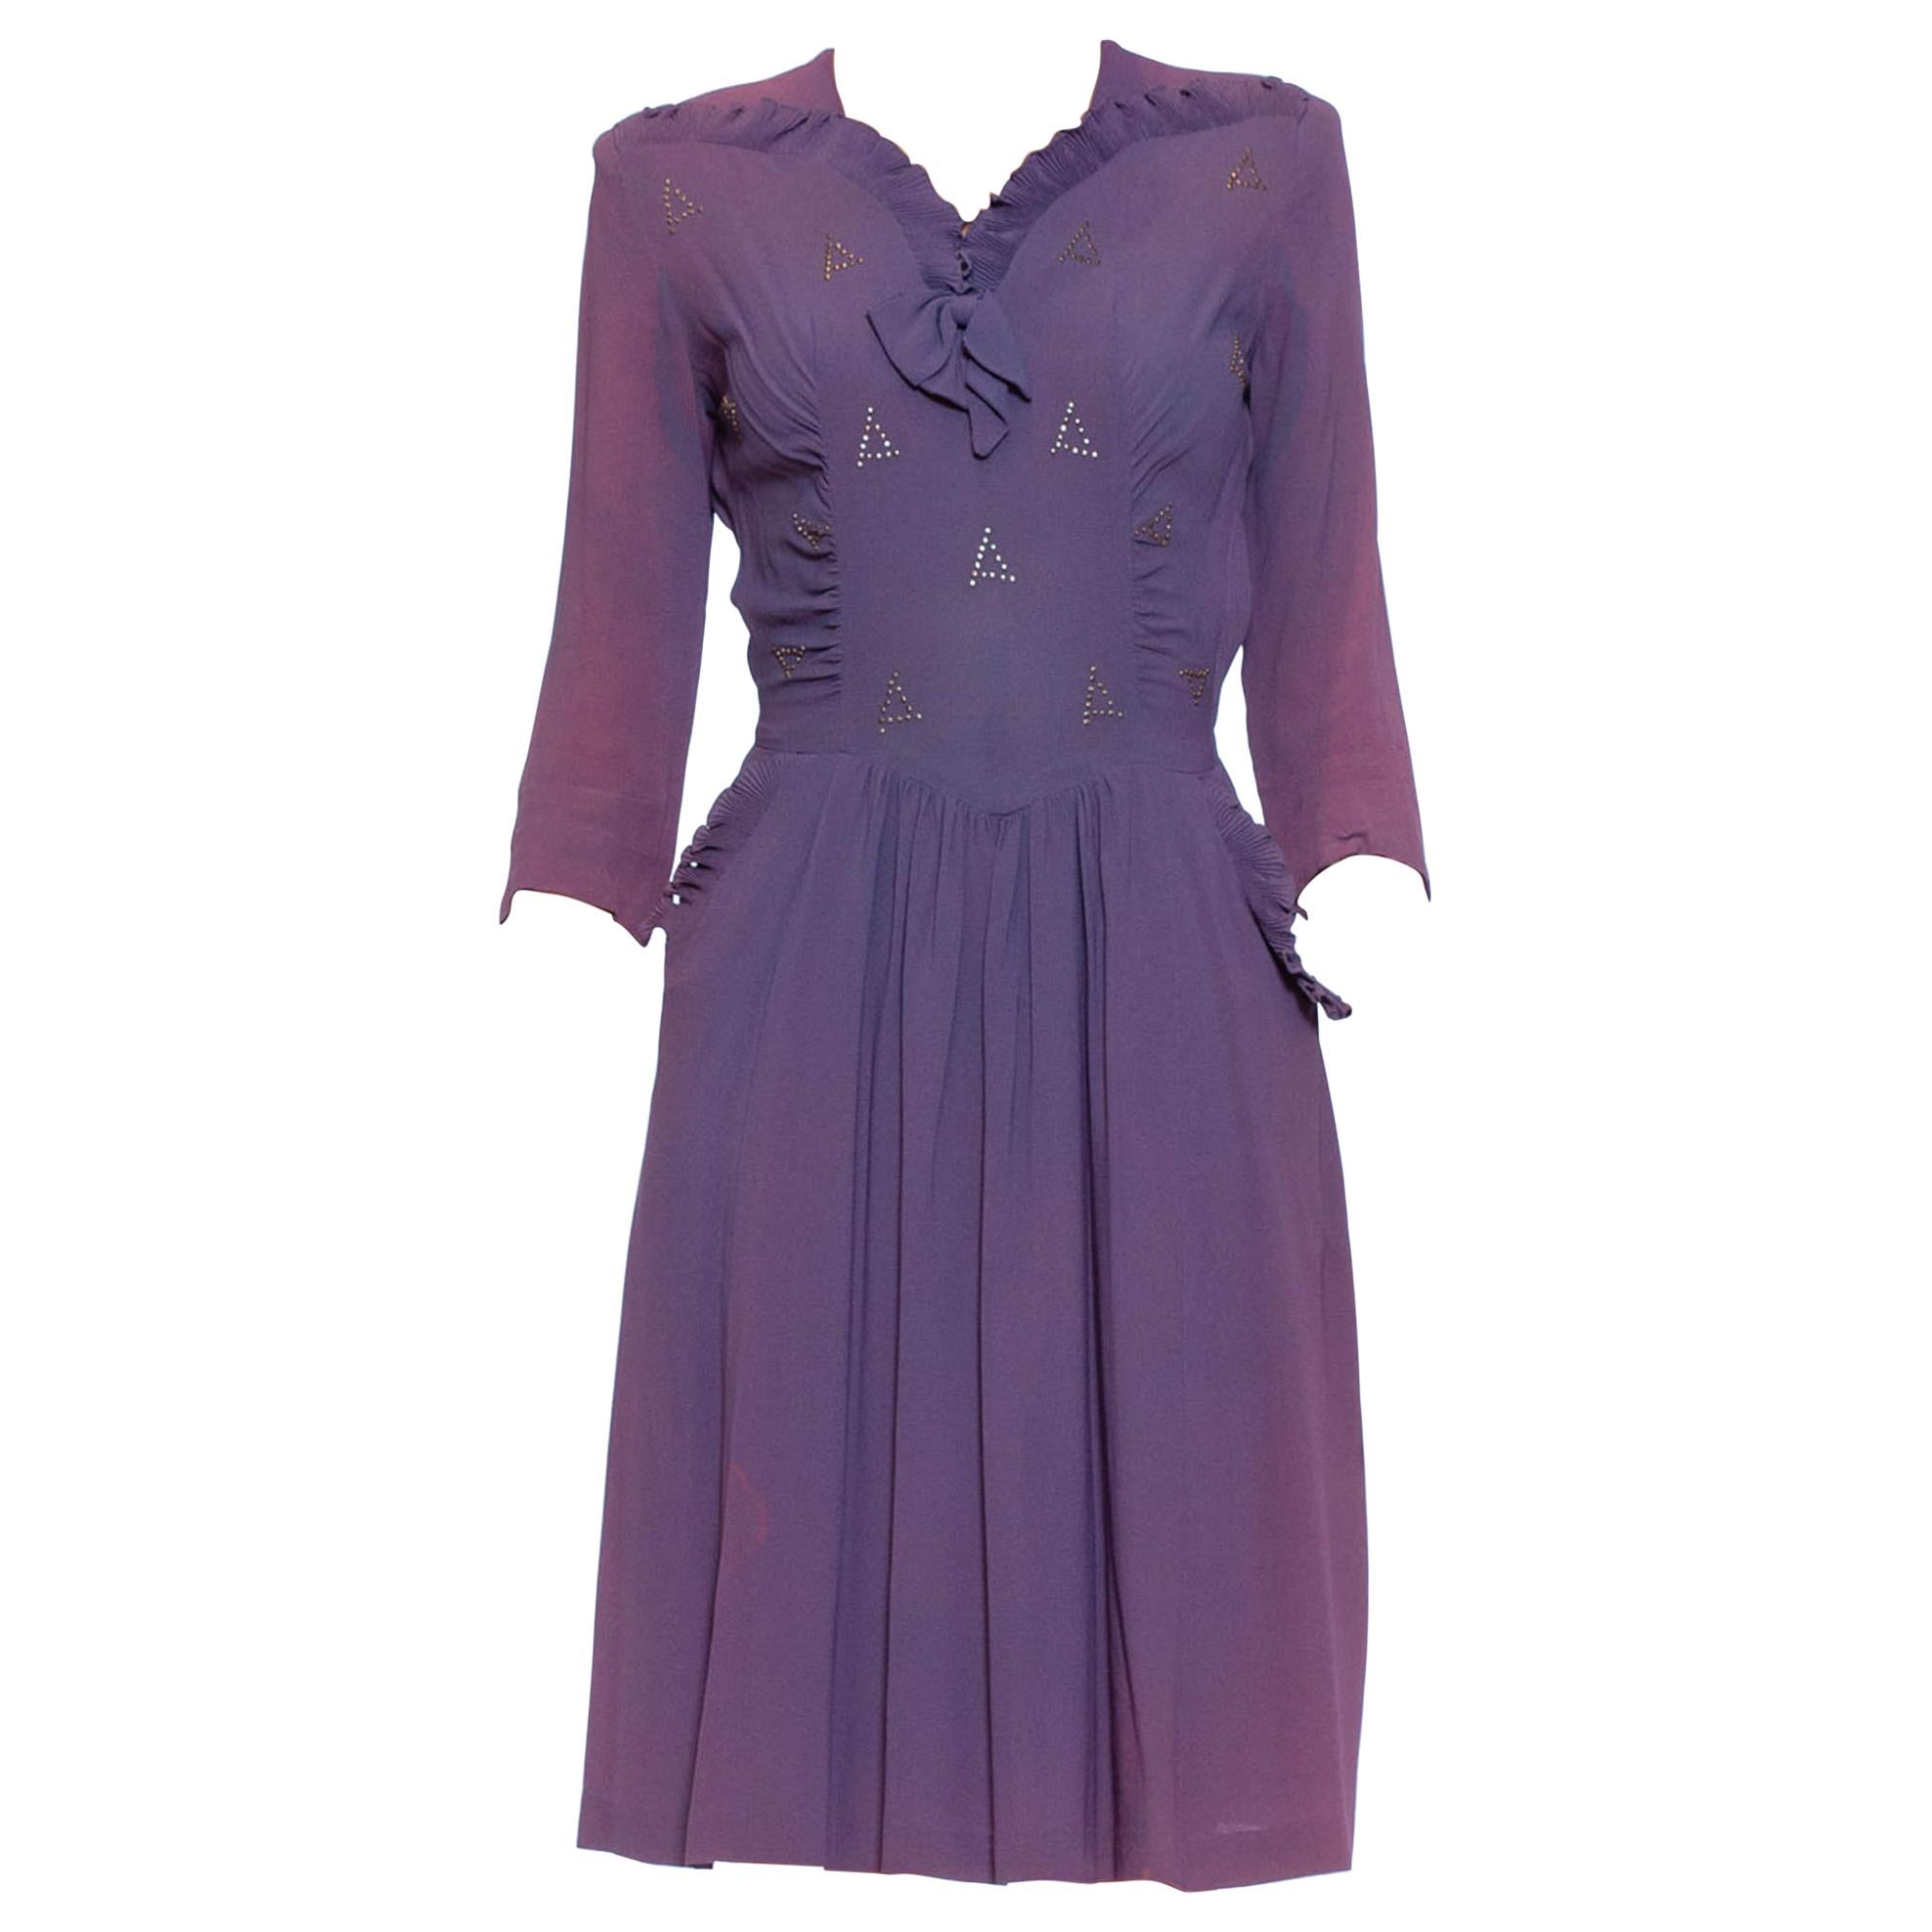 Lila Kleid aus Viskosemischung und Krepp mit silbernen Nieten und Rüschen im Vintage-Stil, As